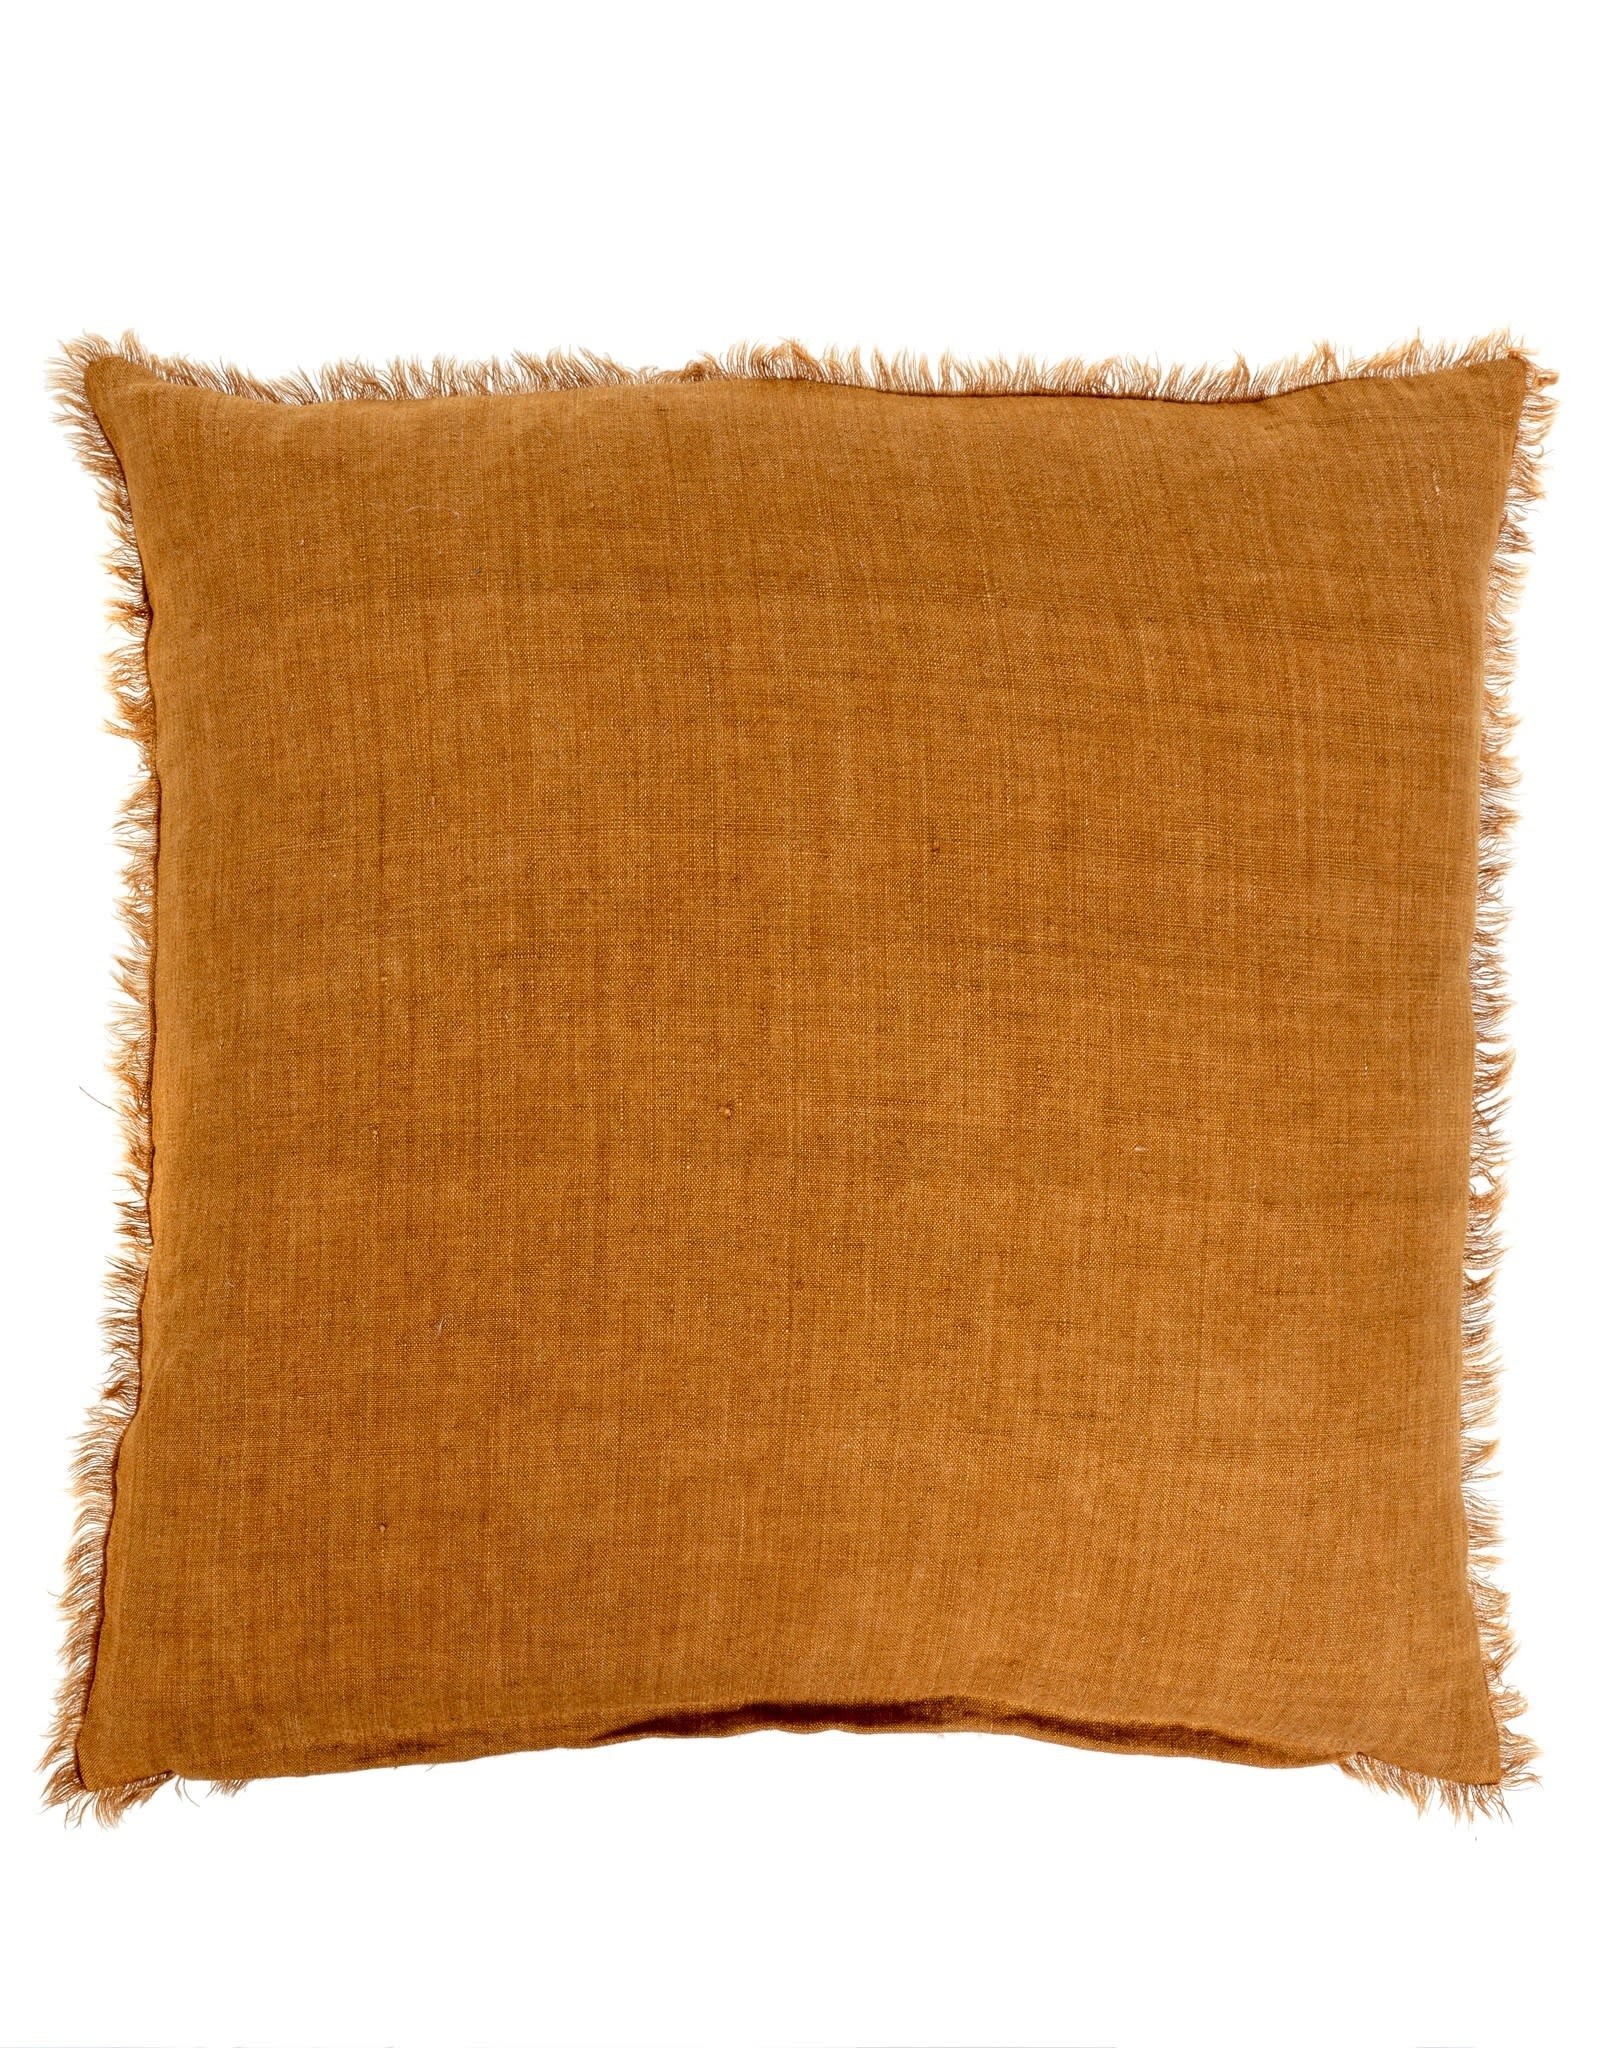 Indaba Lina Linen Pillow - Gold